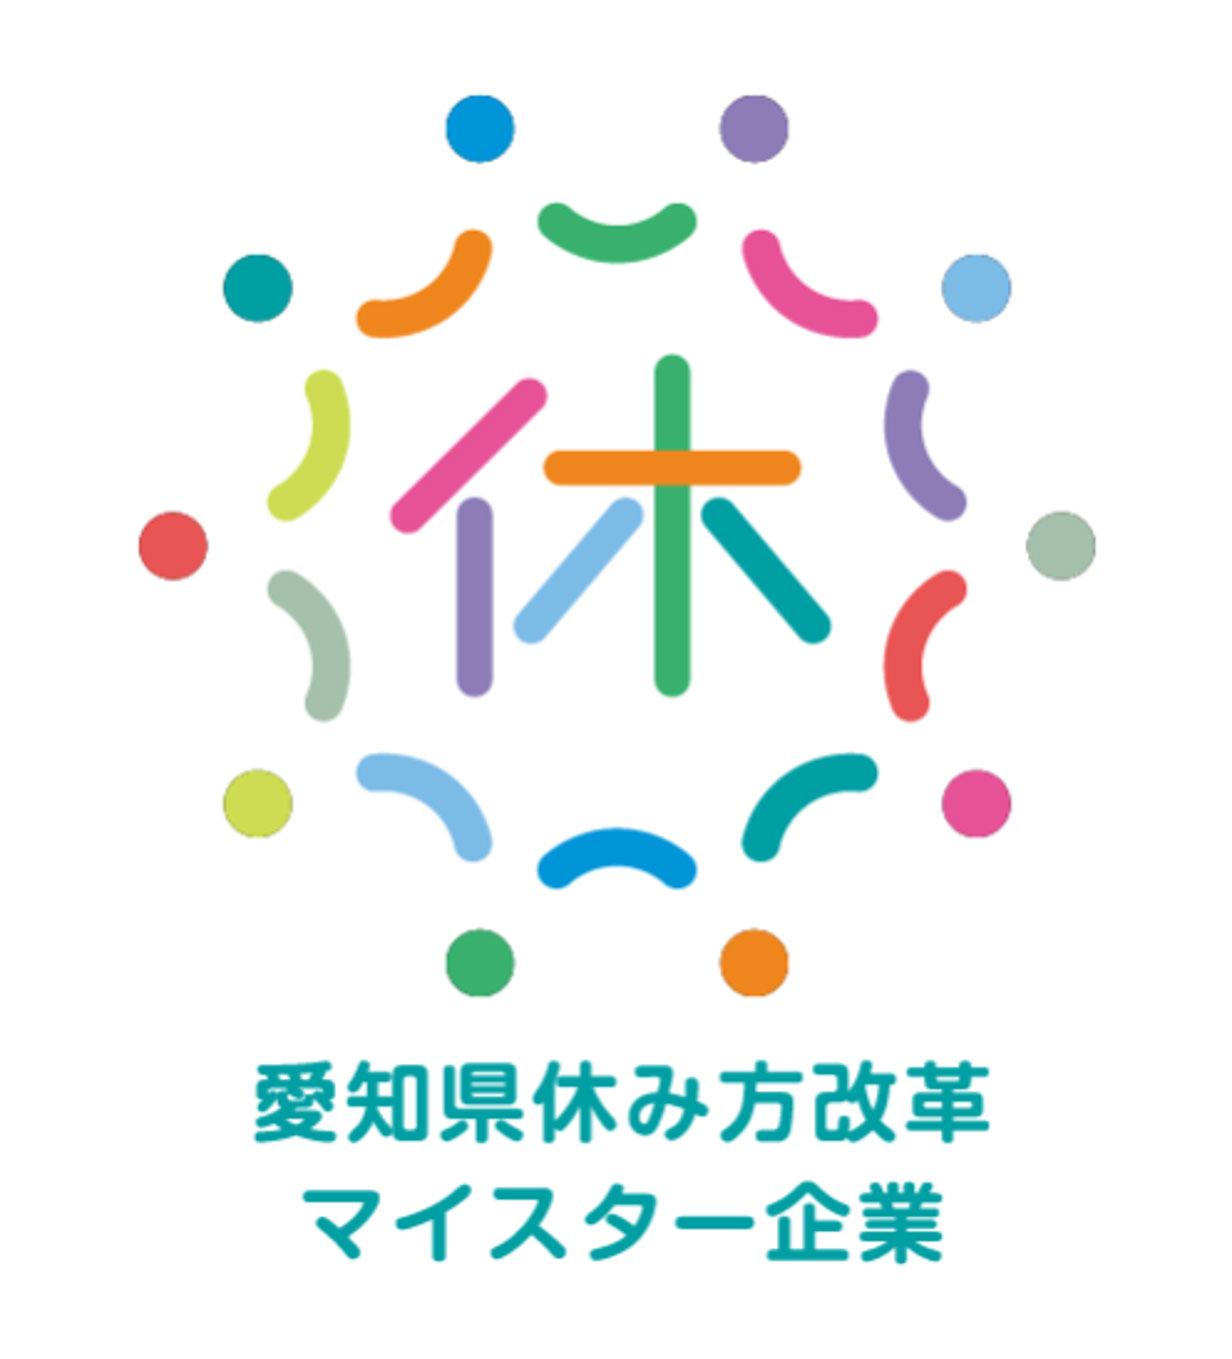 愛知県休み方改革マイスター企業のロゴ